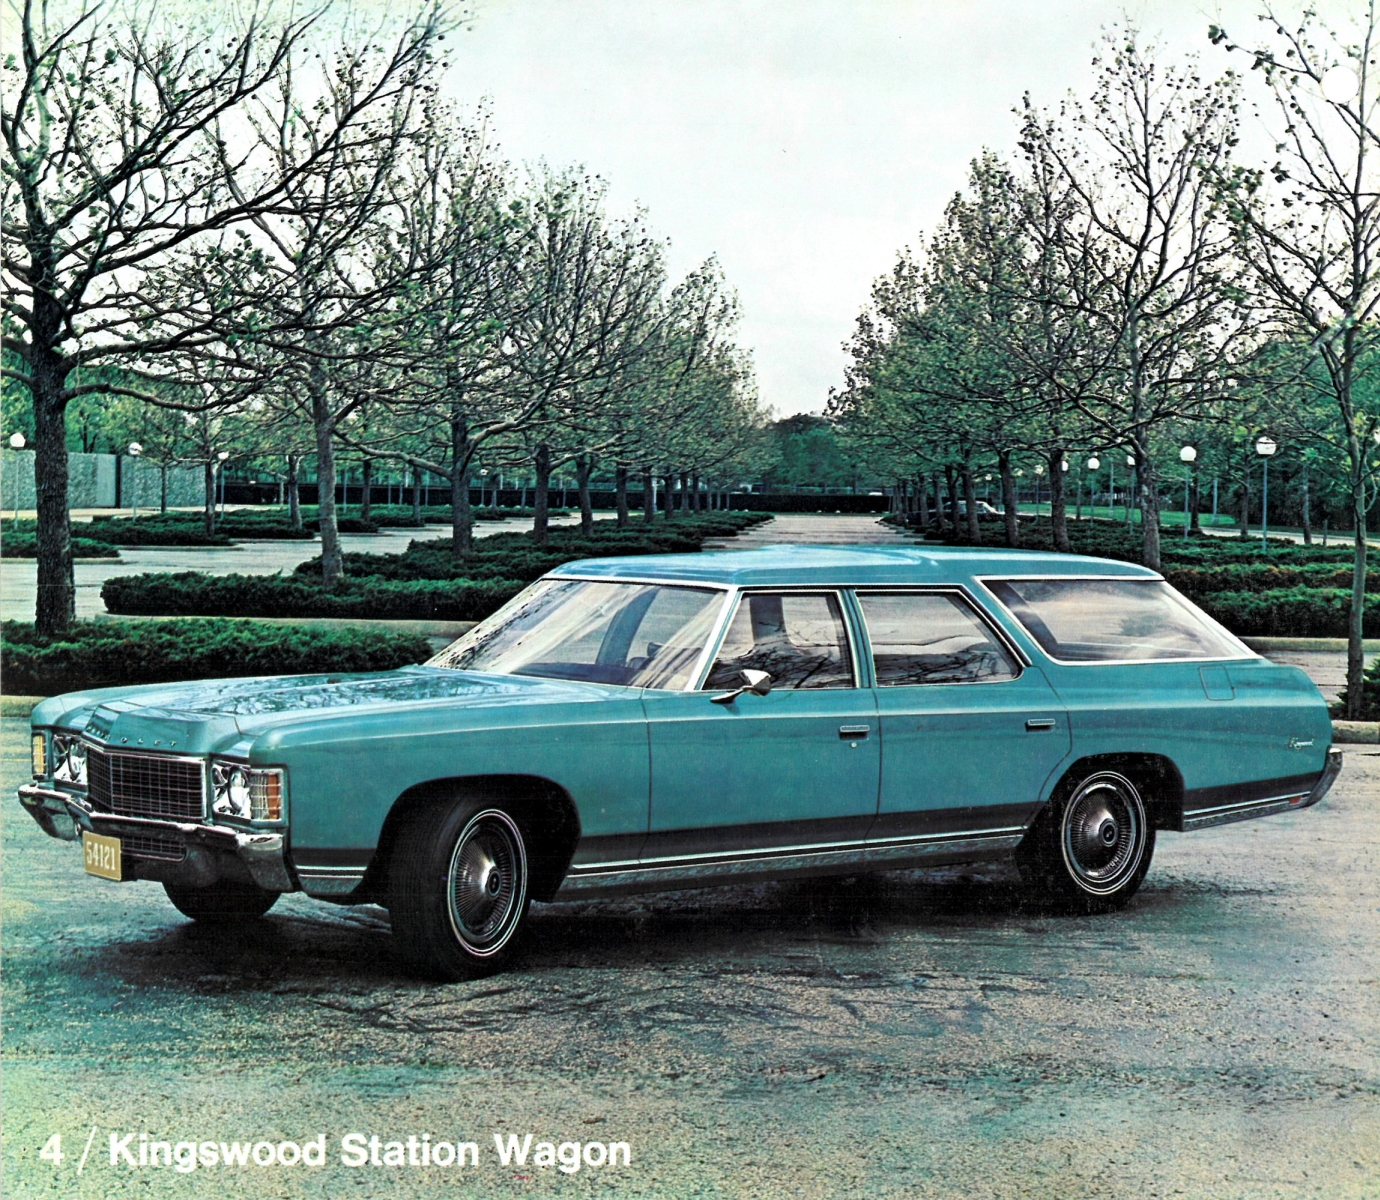 1971_Chevrolet_Dealer_Album-05-04